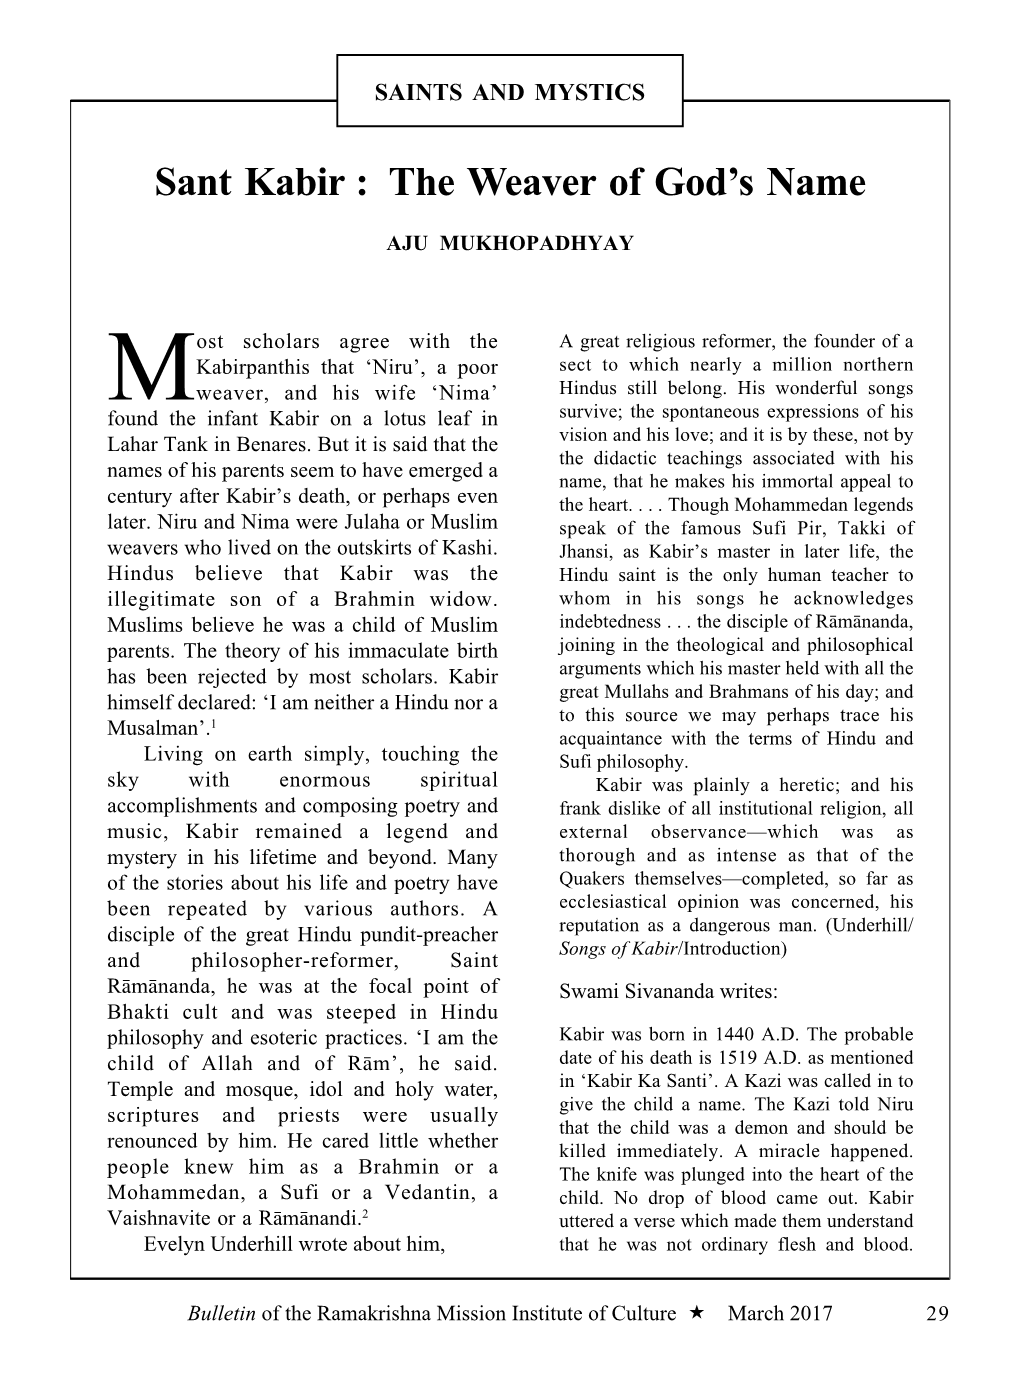 Sant Kabir : the Weaver of God's Name